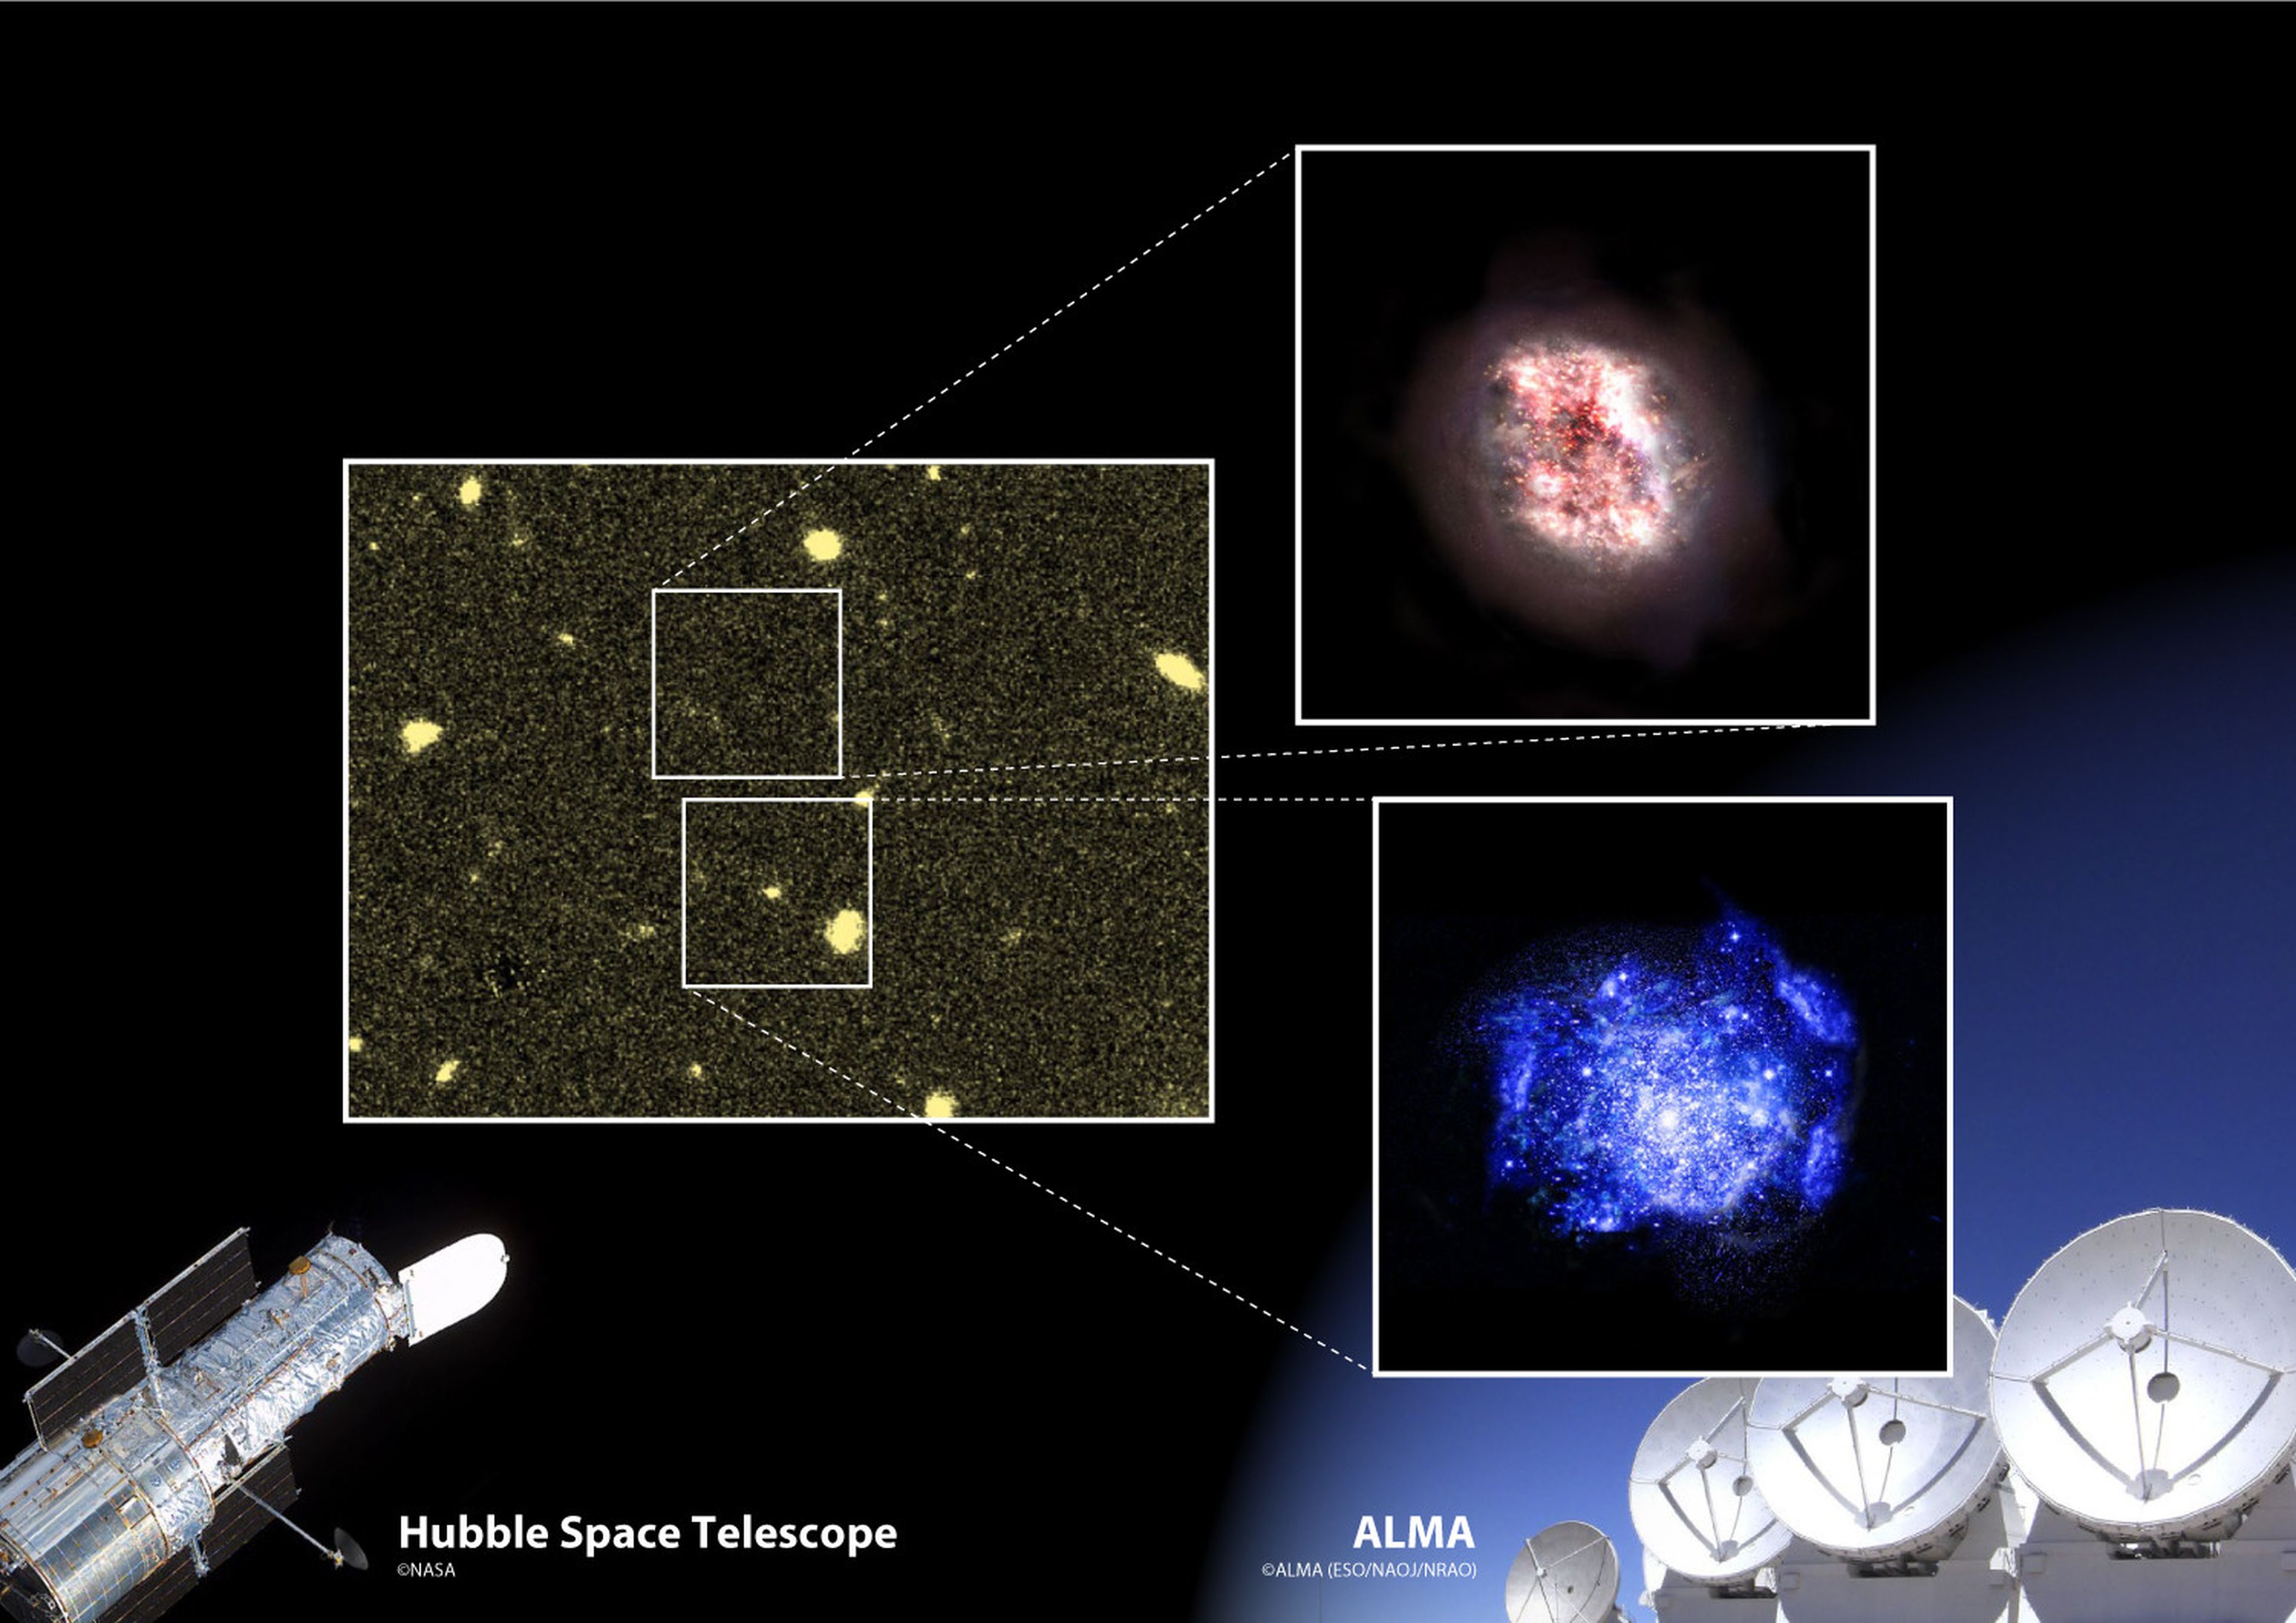 A la izquierda, el polvo cósmico; arriba a la derecha, ilustración de un artista de la galaxia escondida en el polvo; en la parte inferior derecha, una galaxia joven típica ya conocida.